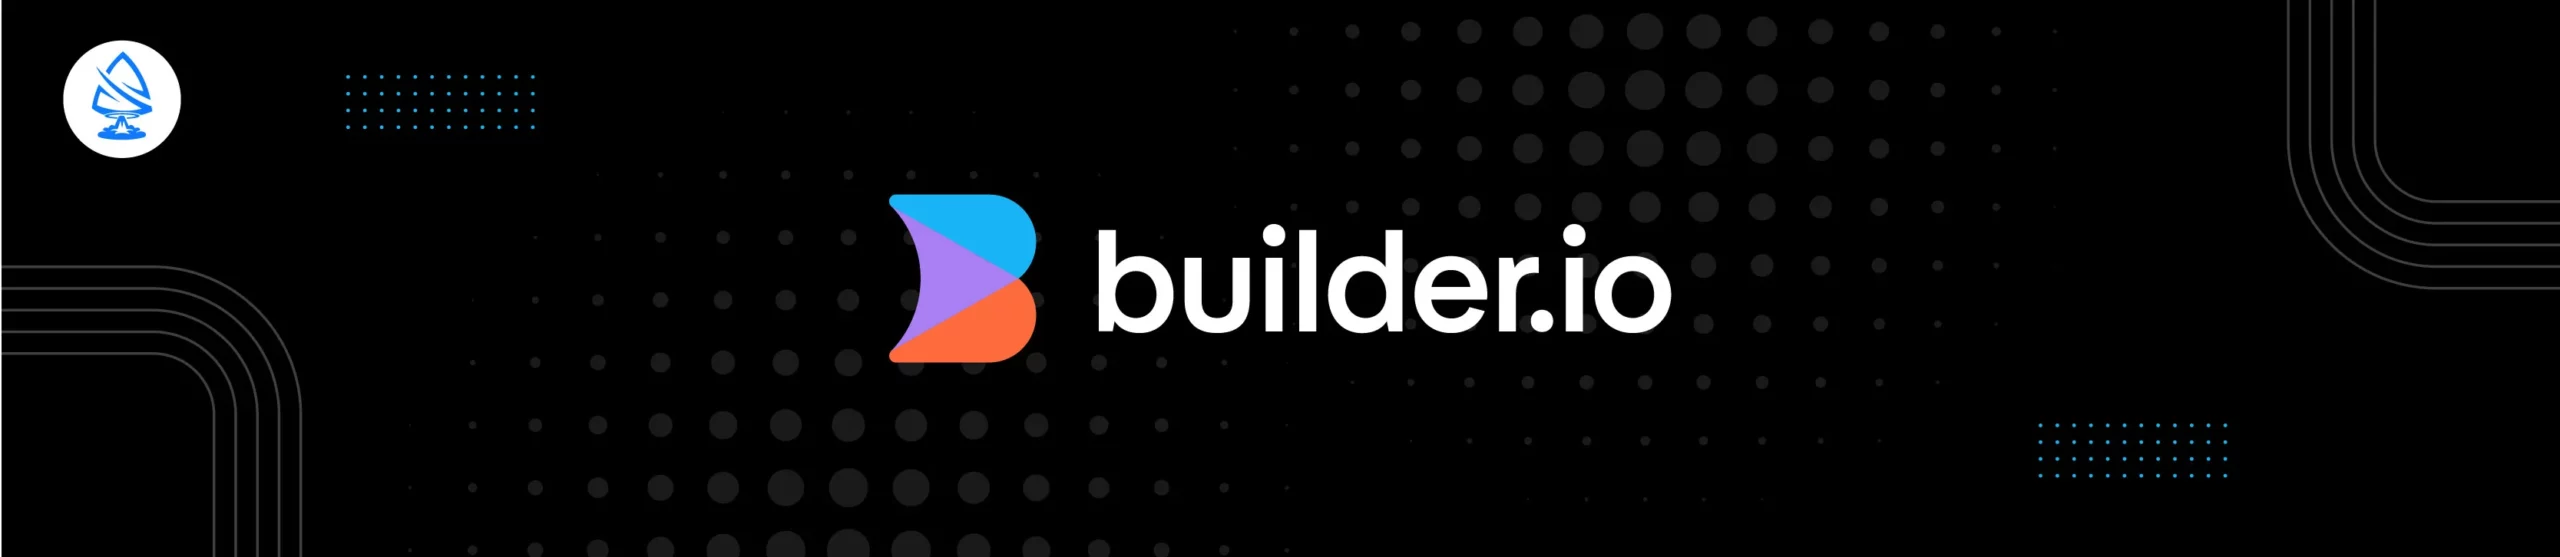 Builder.io